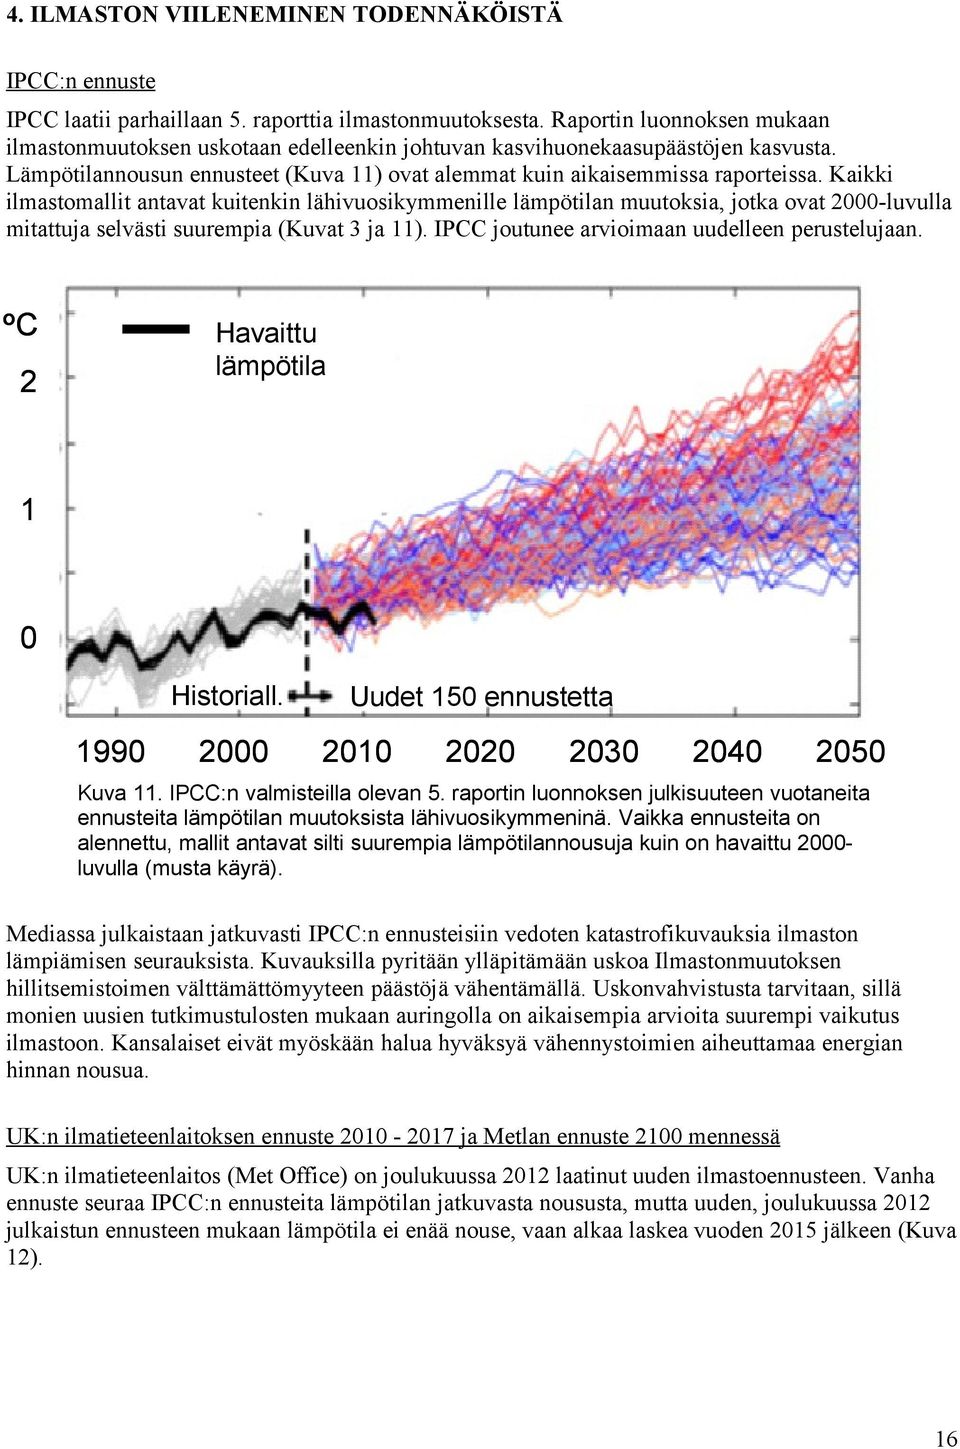 Kaikki ilmastomallit antavat kuitenkin lähivuosikymmenille lämpötilan muutoksia, jotka ovat 2-luvulla mitattuja selvästi suurempia (Kuvat 3 ja 11). IPCC joutunee arvioimaan uudelleen perustelujaan.